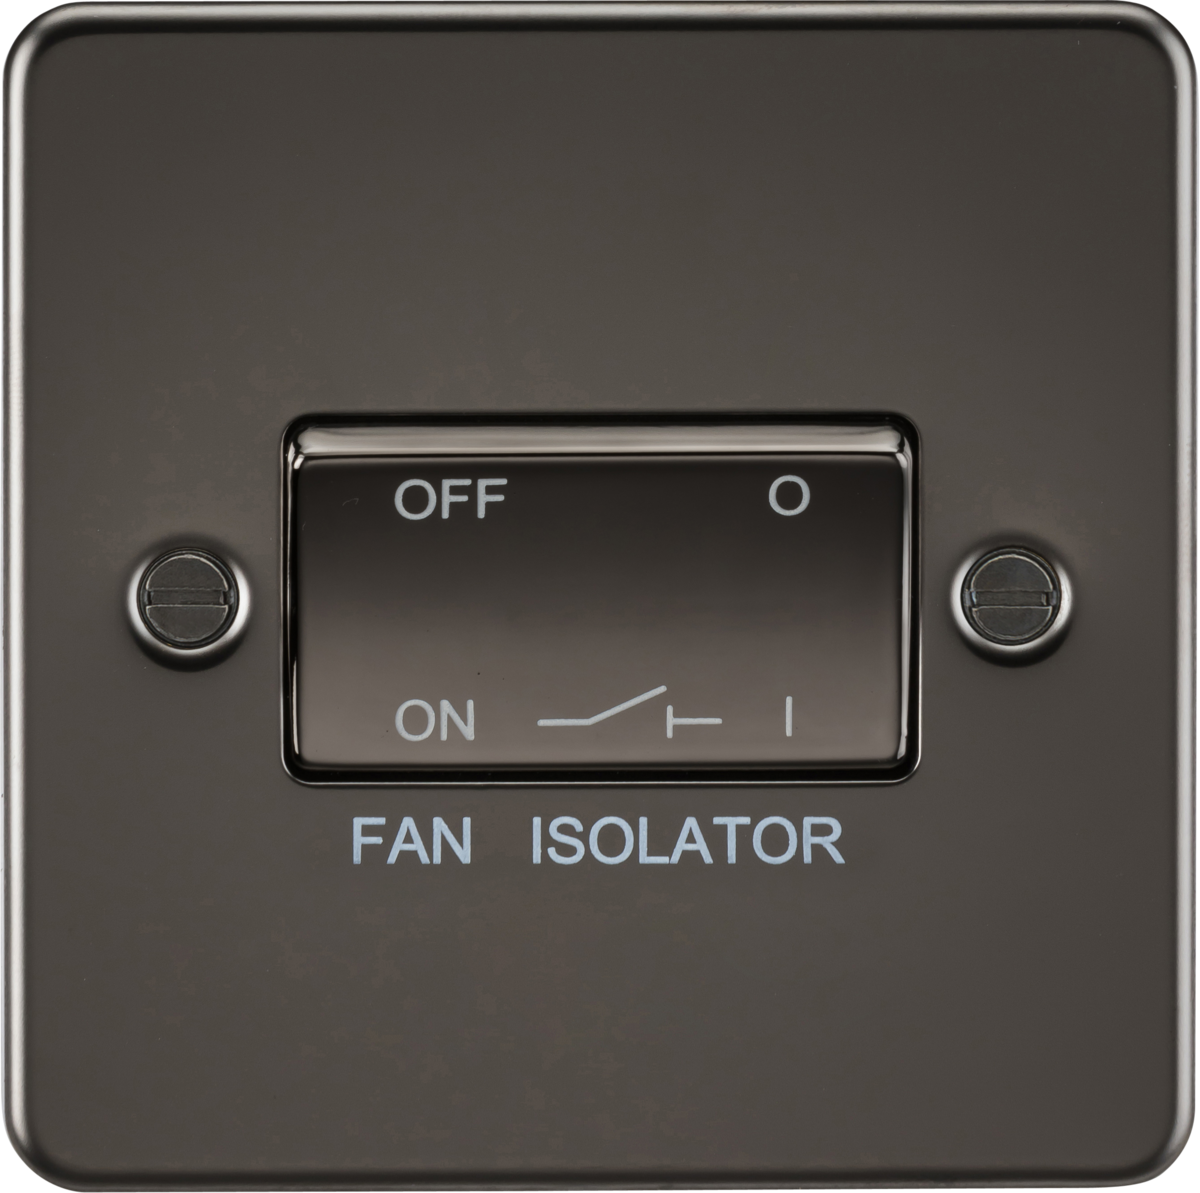 Flat Plate 10AX 3 Pole Fan Isolator Switch - Gunmetal